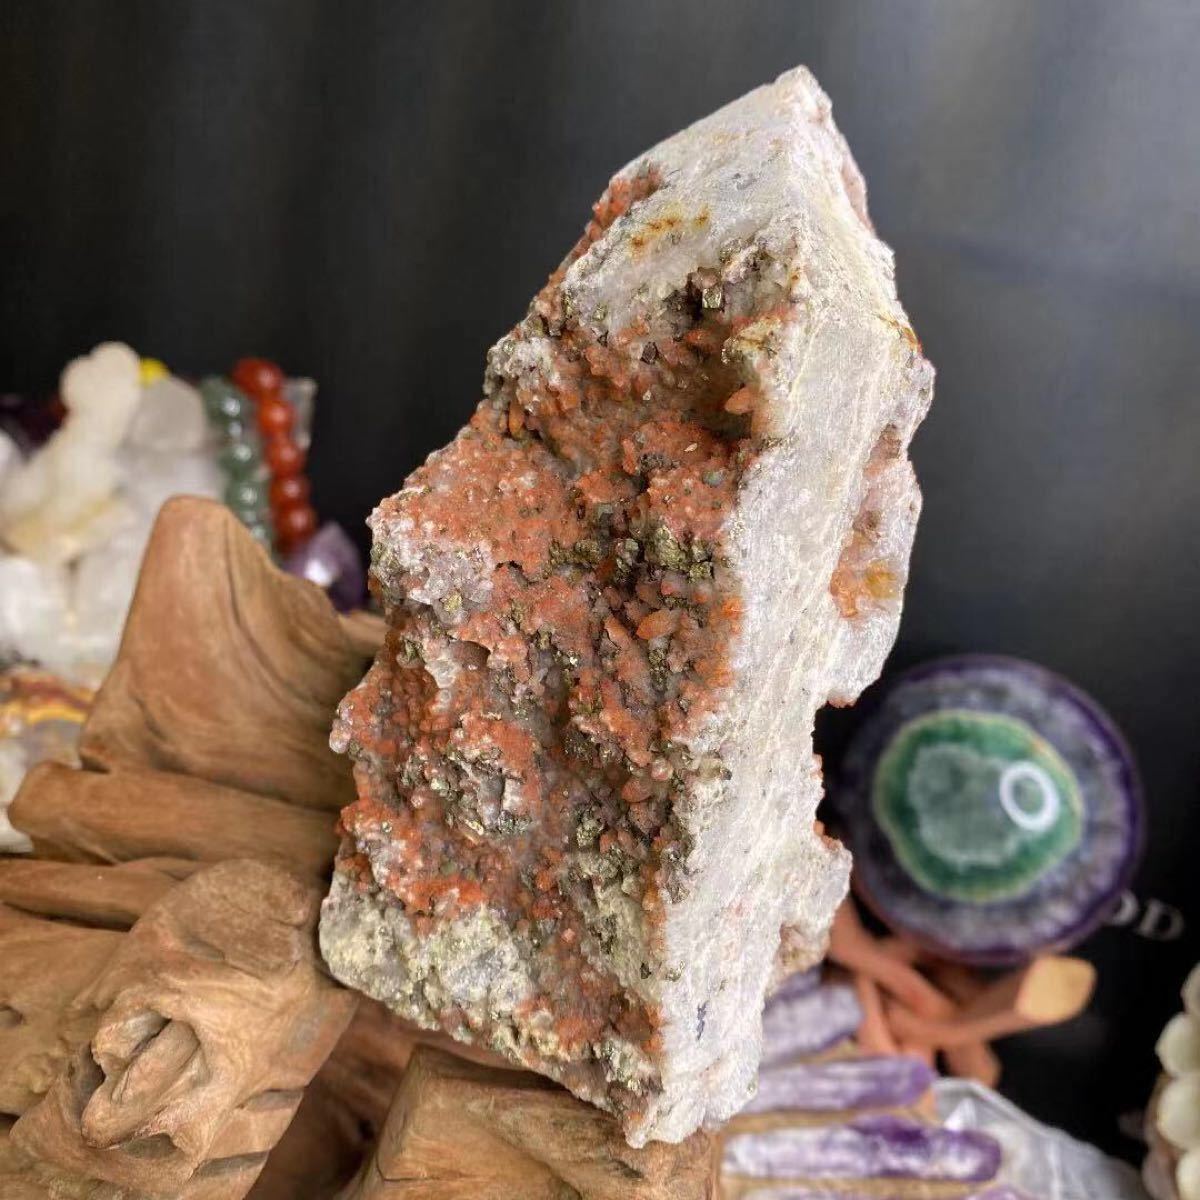 極希少 チャルコパイライト水晶柱 赤水晶 黄銅鉱 共生鉱物 特大 ジオード 美造型 美結晶 天然石 パワーストーン原石 